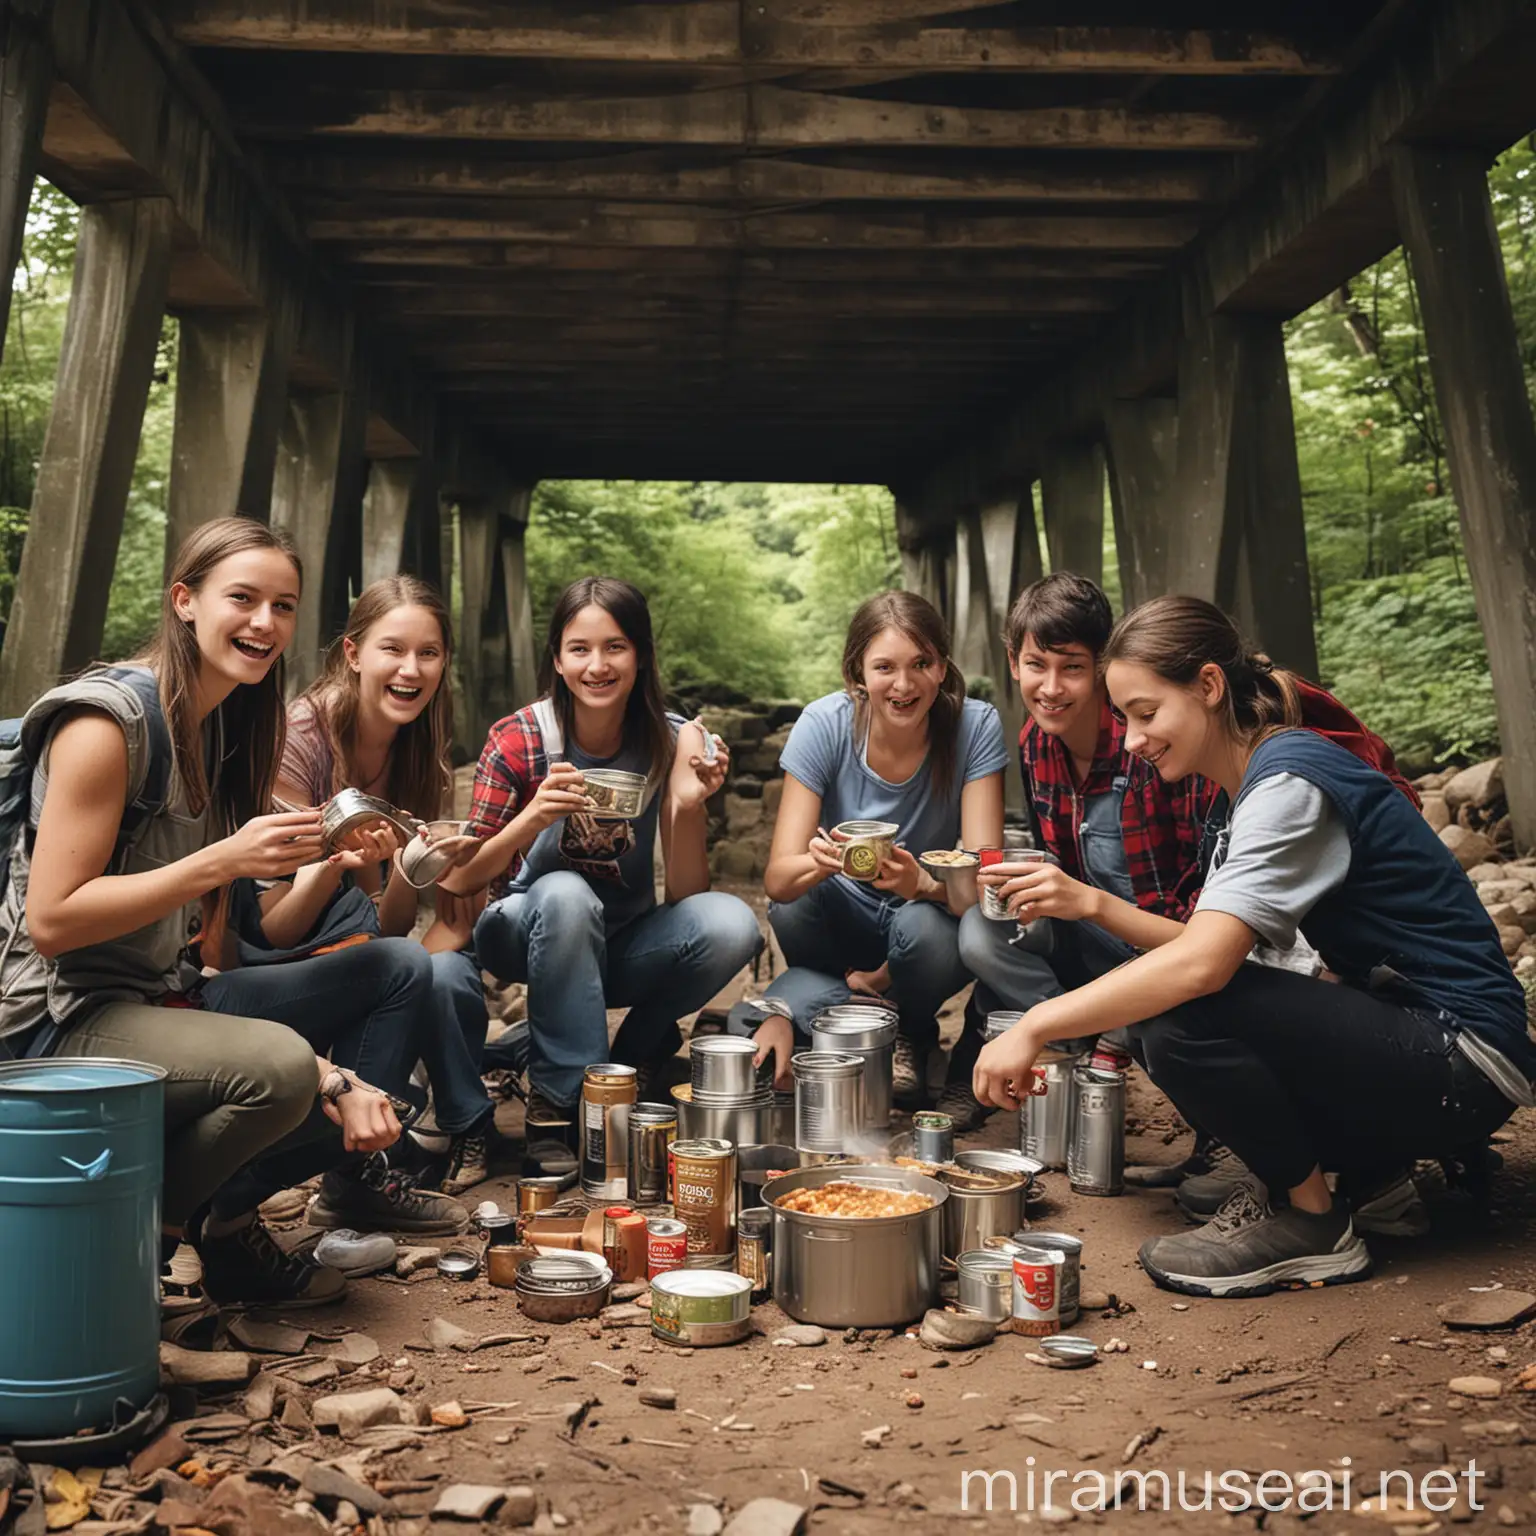 erstelle mir ein Bild von 7 Freunden, die unter einer Brücke campen und sich mit einem Campingkocher Dosenessen kochen